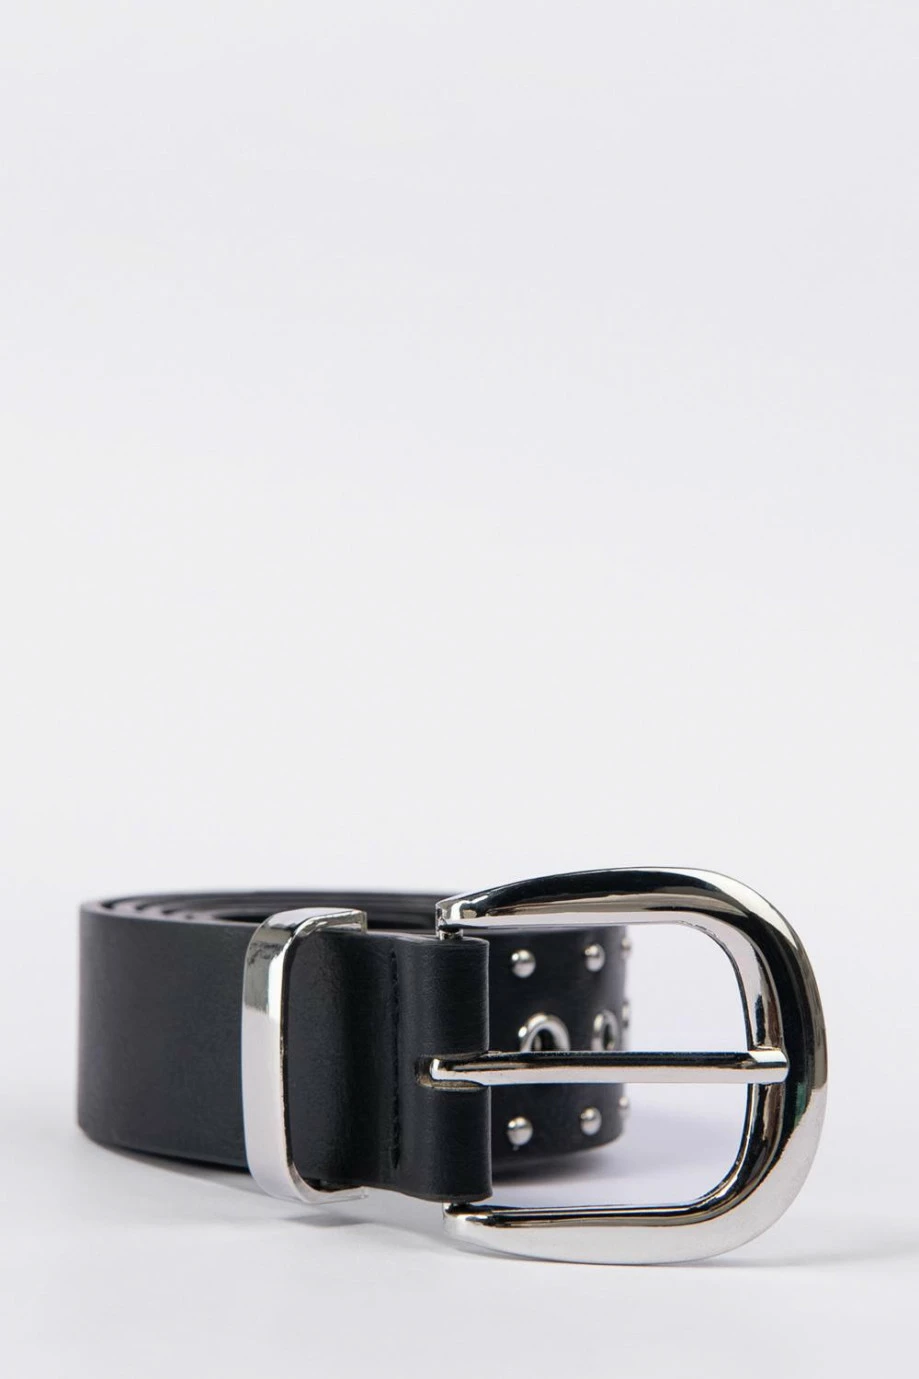 Cinturón sintético negro con hebilla cuadrada y taches y ojales metálicos